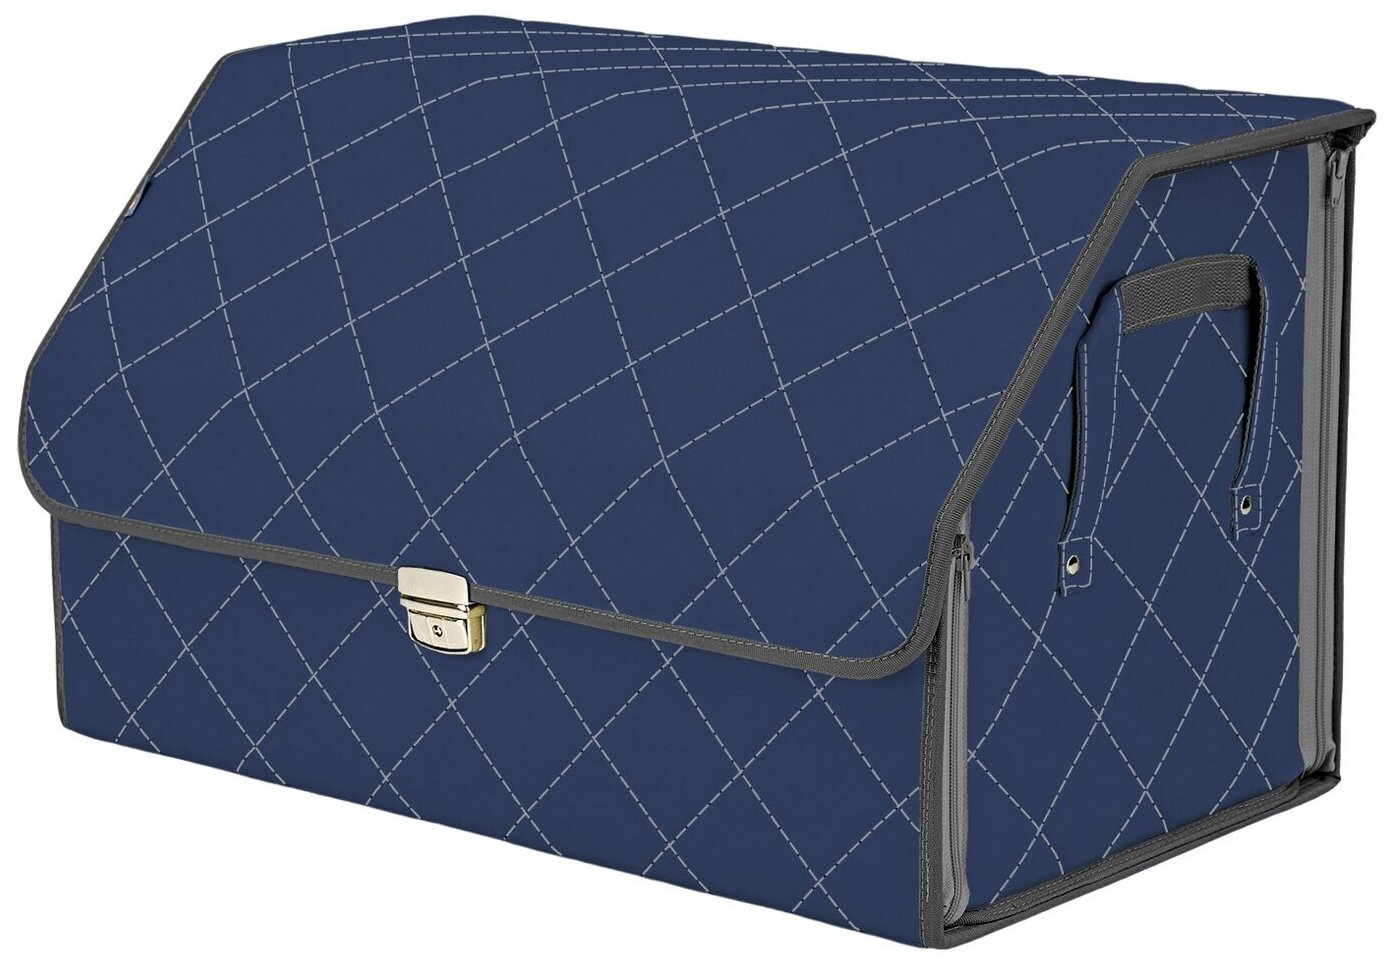 Органайзер-саквояж в багажник "Союз Премиум" (размер XL). Цвет: синий с серой прострочкой Ромб.